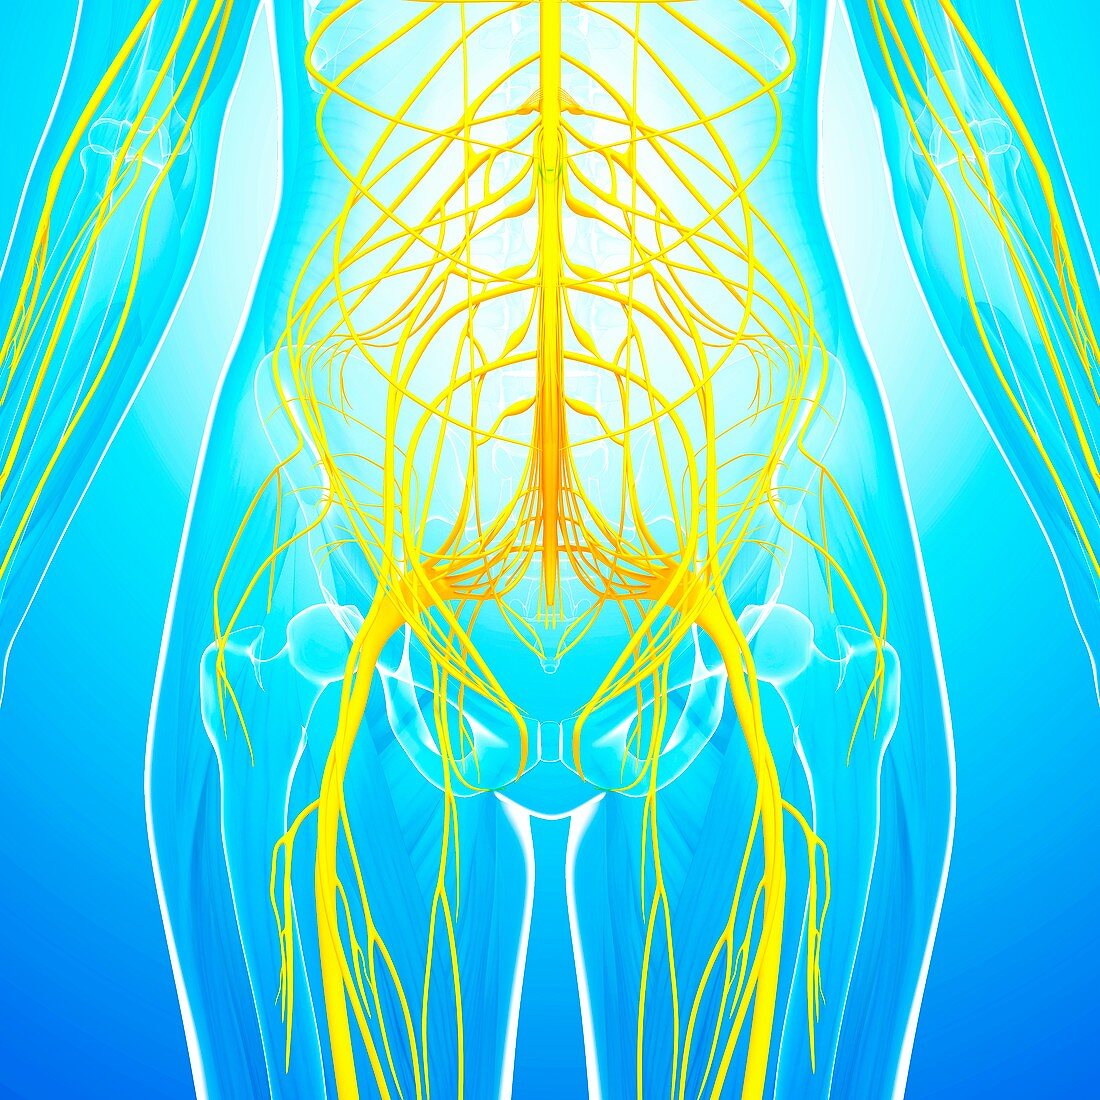 Human nervous system,artwork